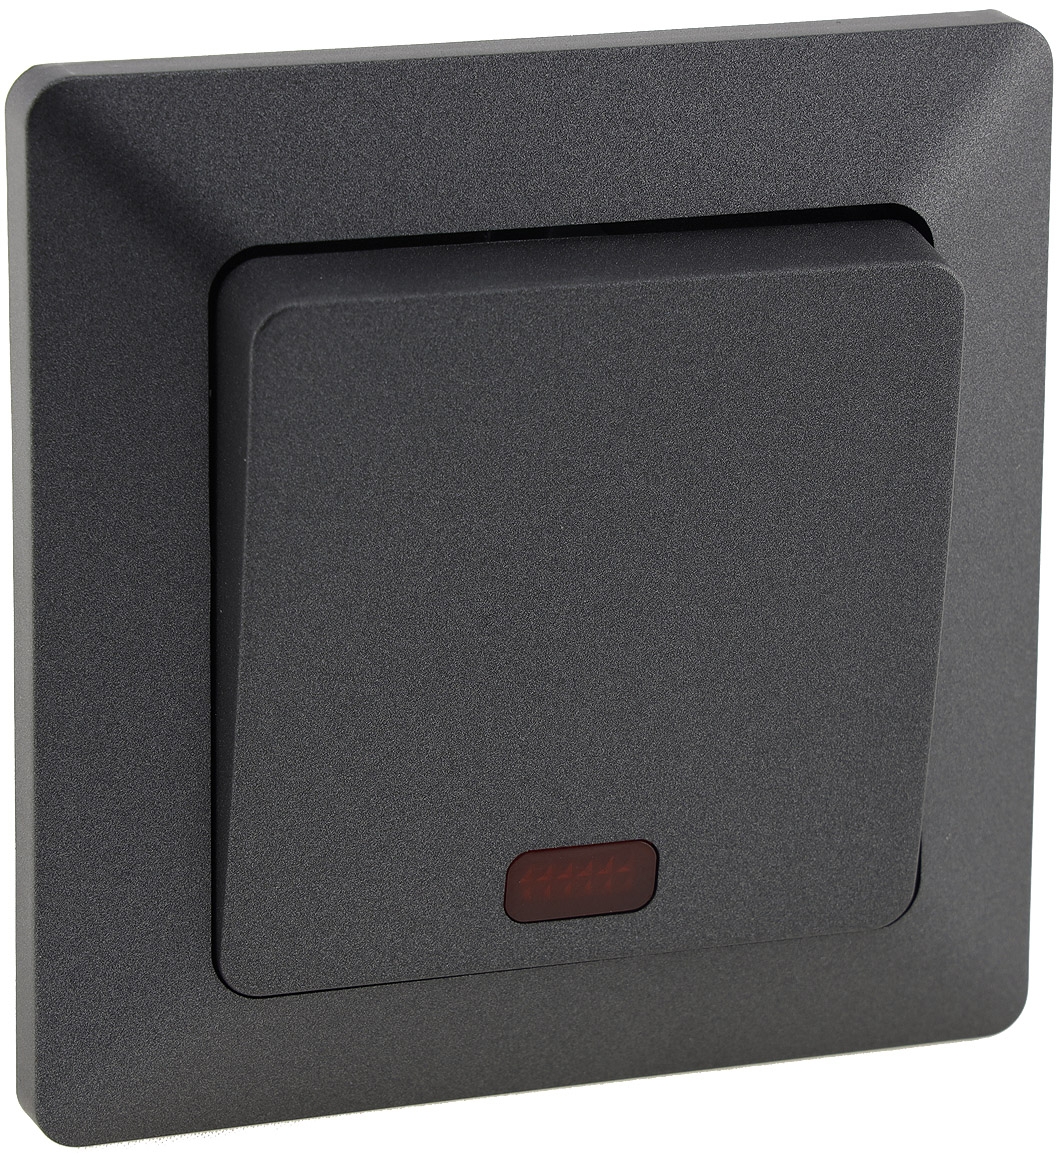 MILOS Kontroll-Schalter mit Lämpchen 250V~/ 10A, inkl. Rahmen, UP, Anthrazit 